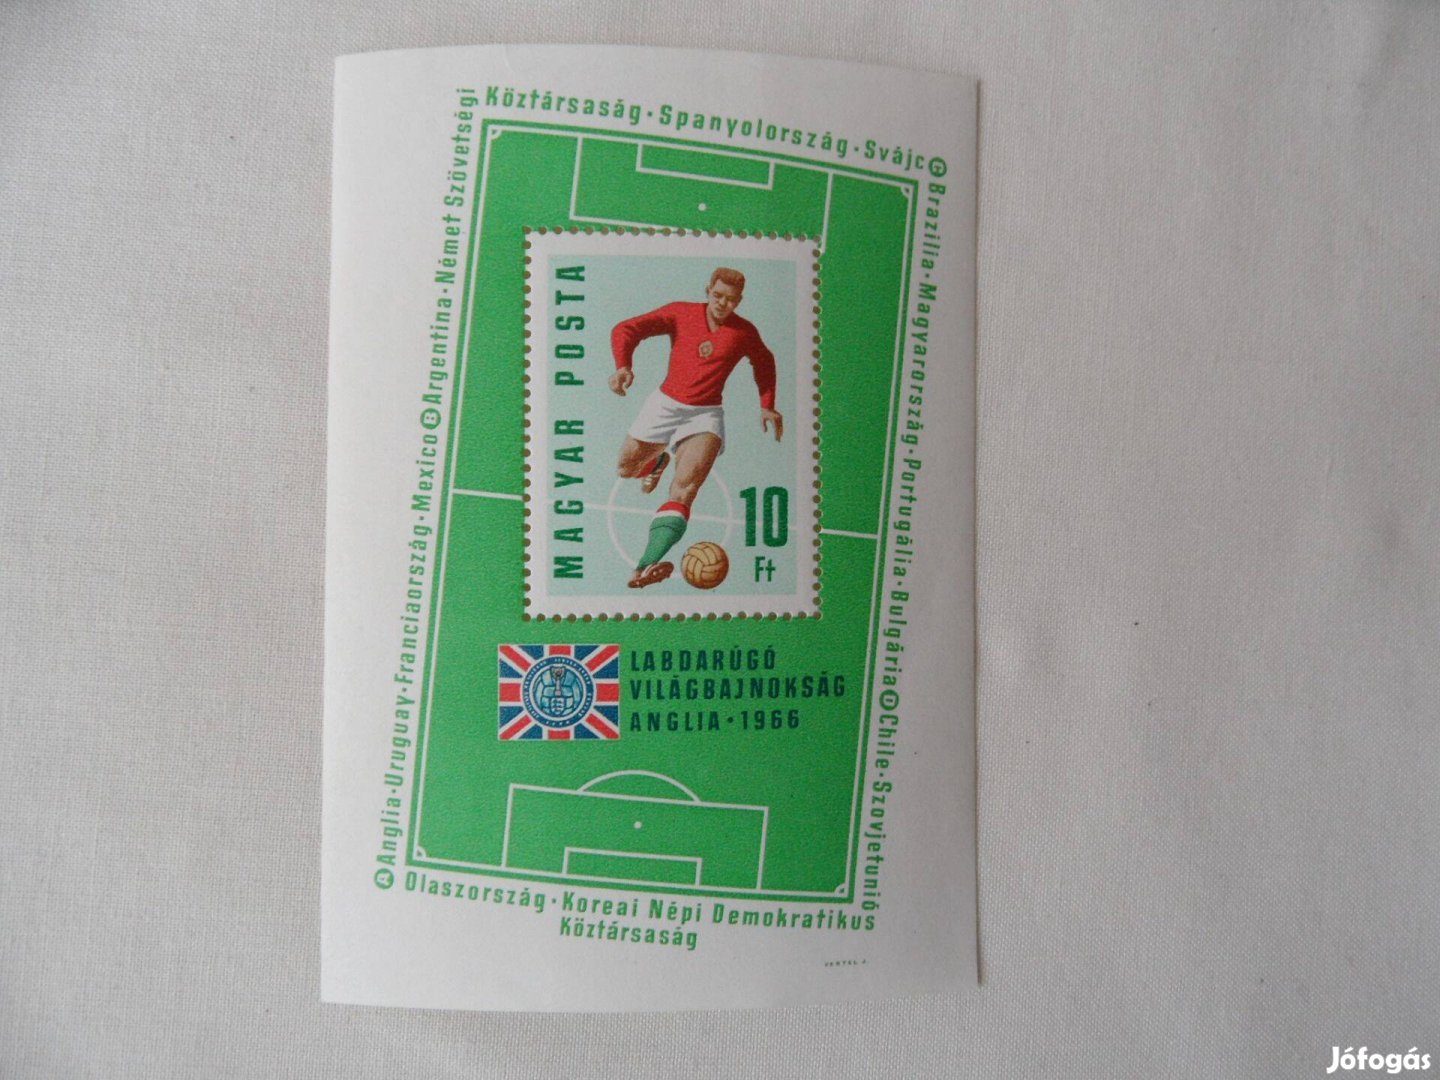 Labdarúgó Világbajnokság bélyeg ( Anglia 1966 )